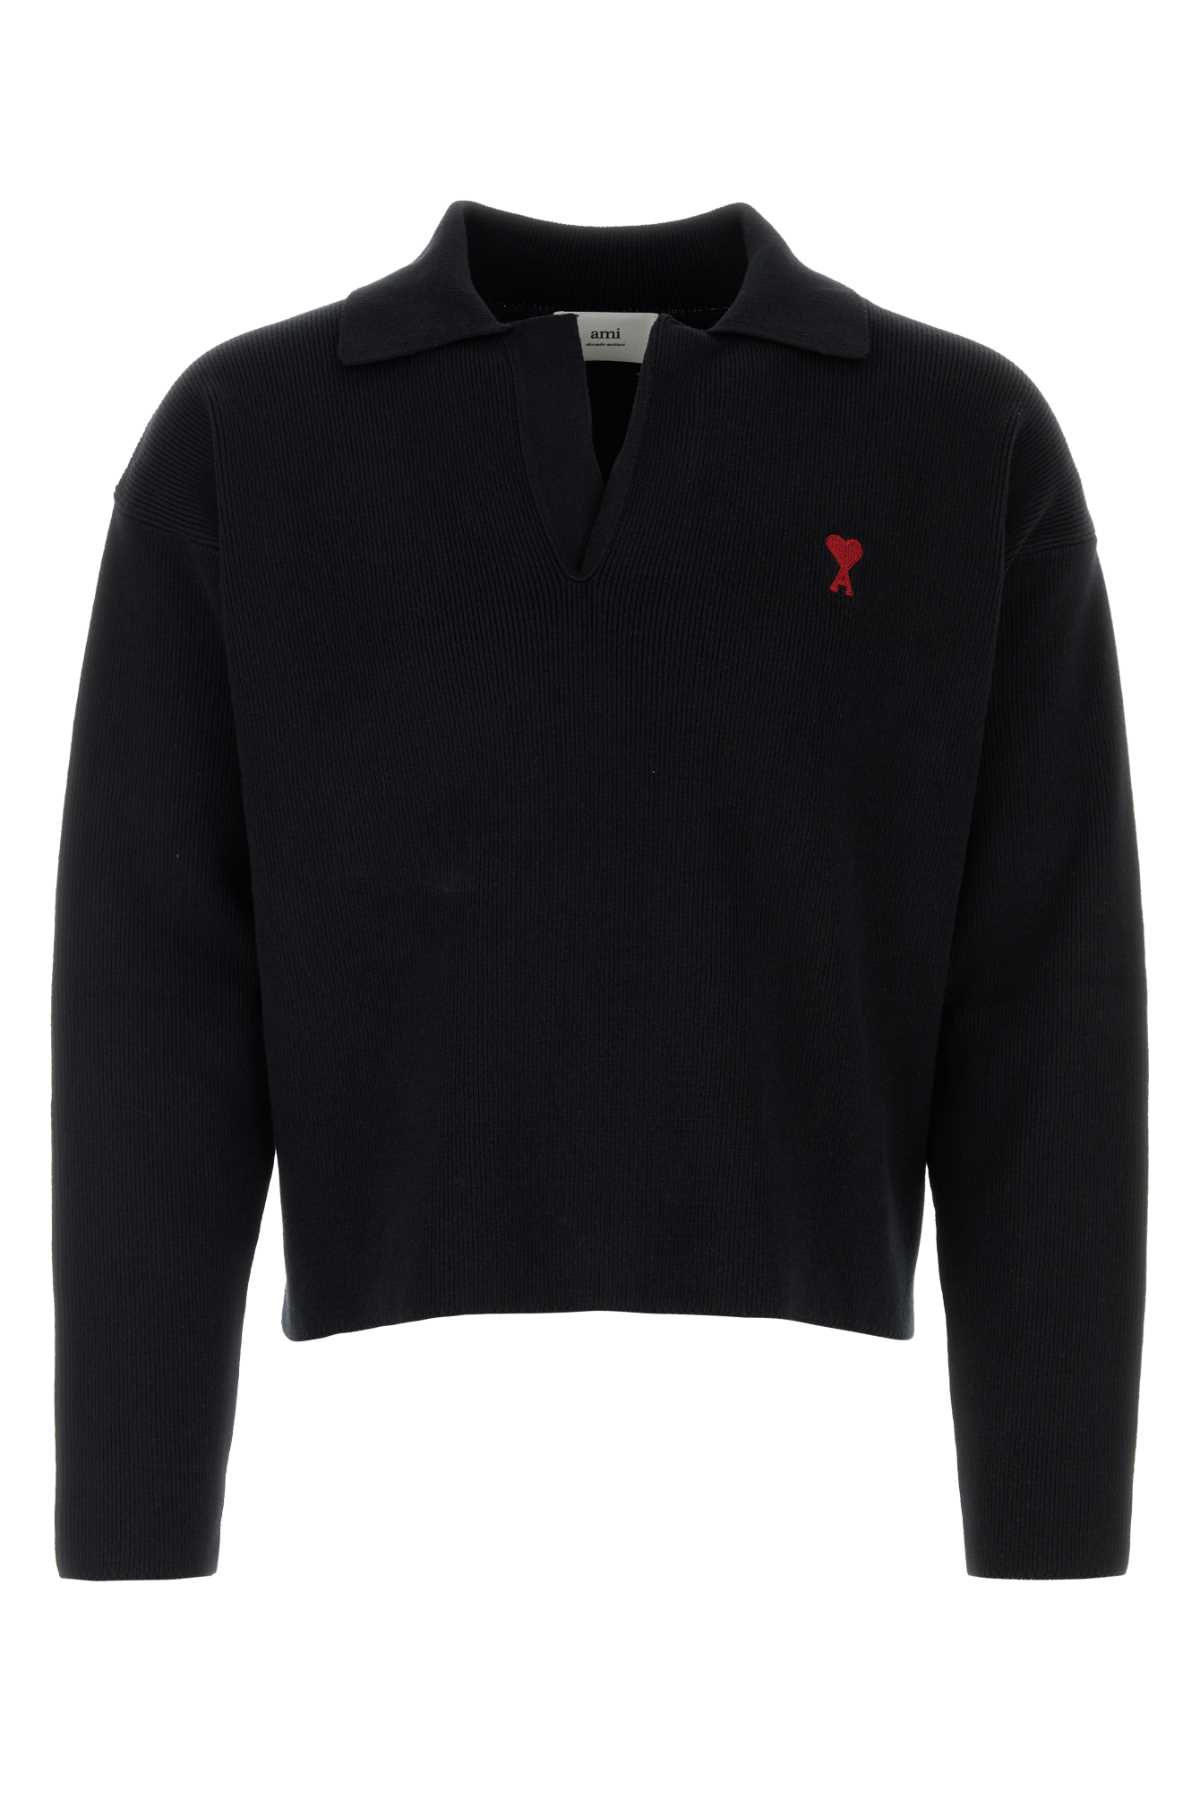 Shop Ami Alexandre Mattiussi Black Stretch Wool Blend Sweater